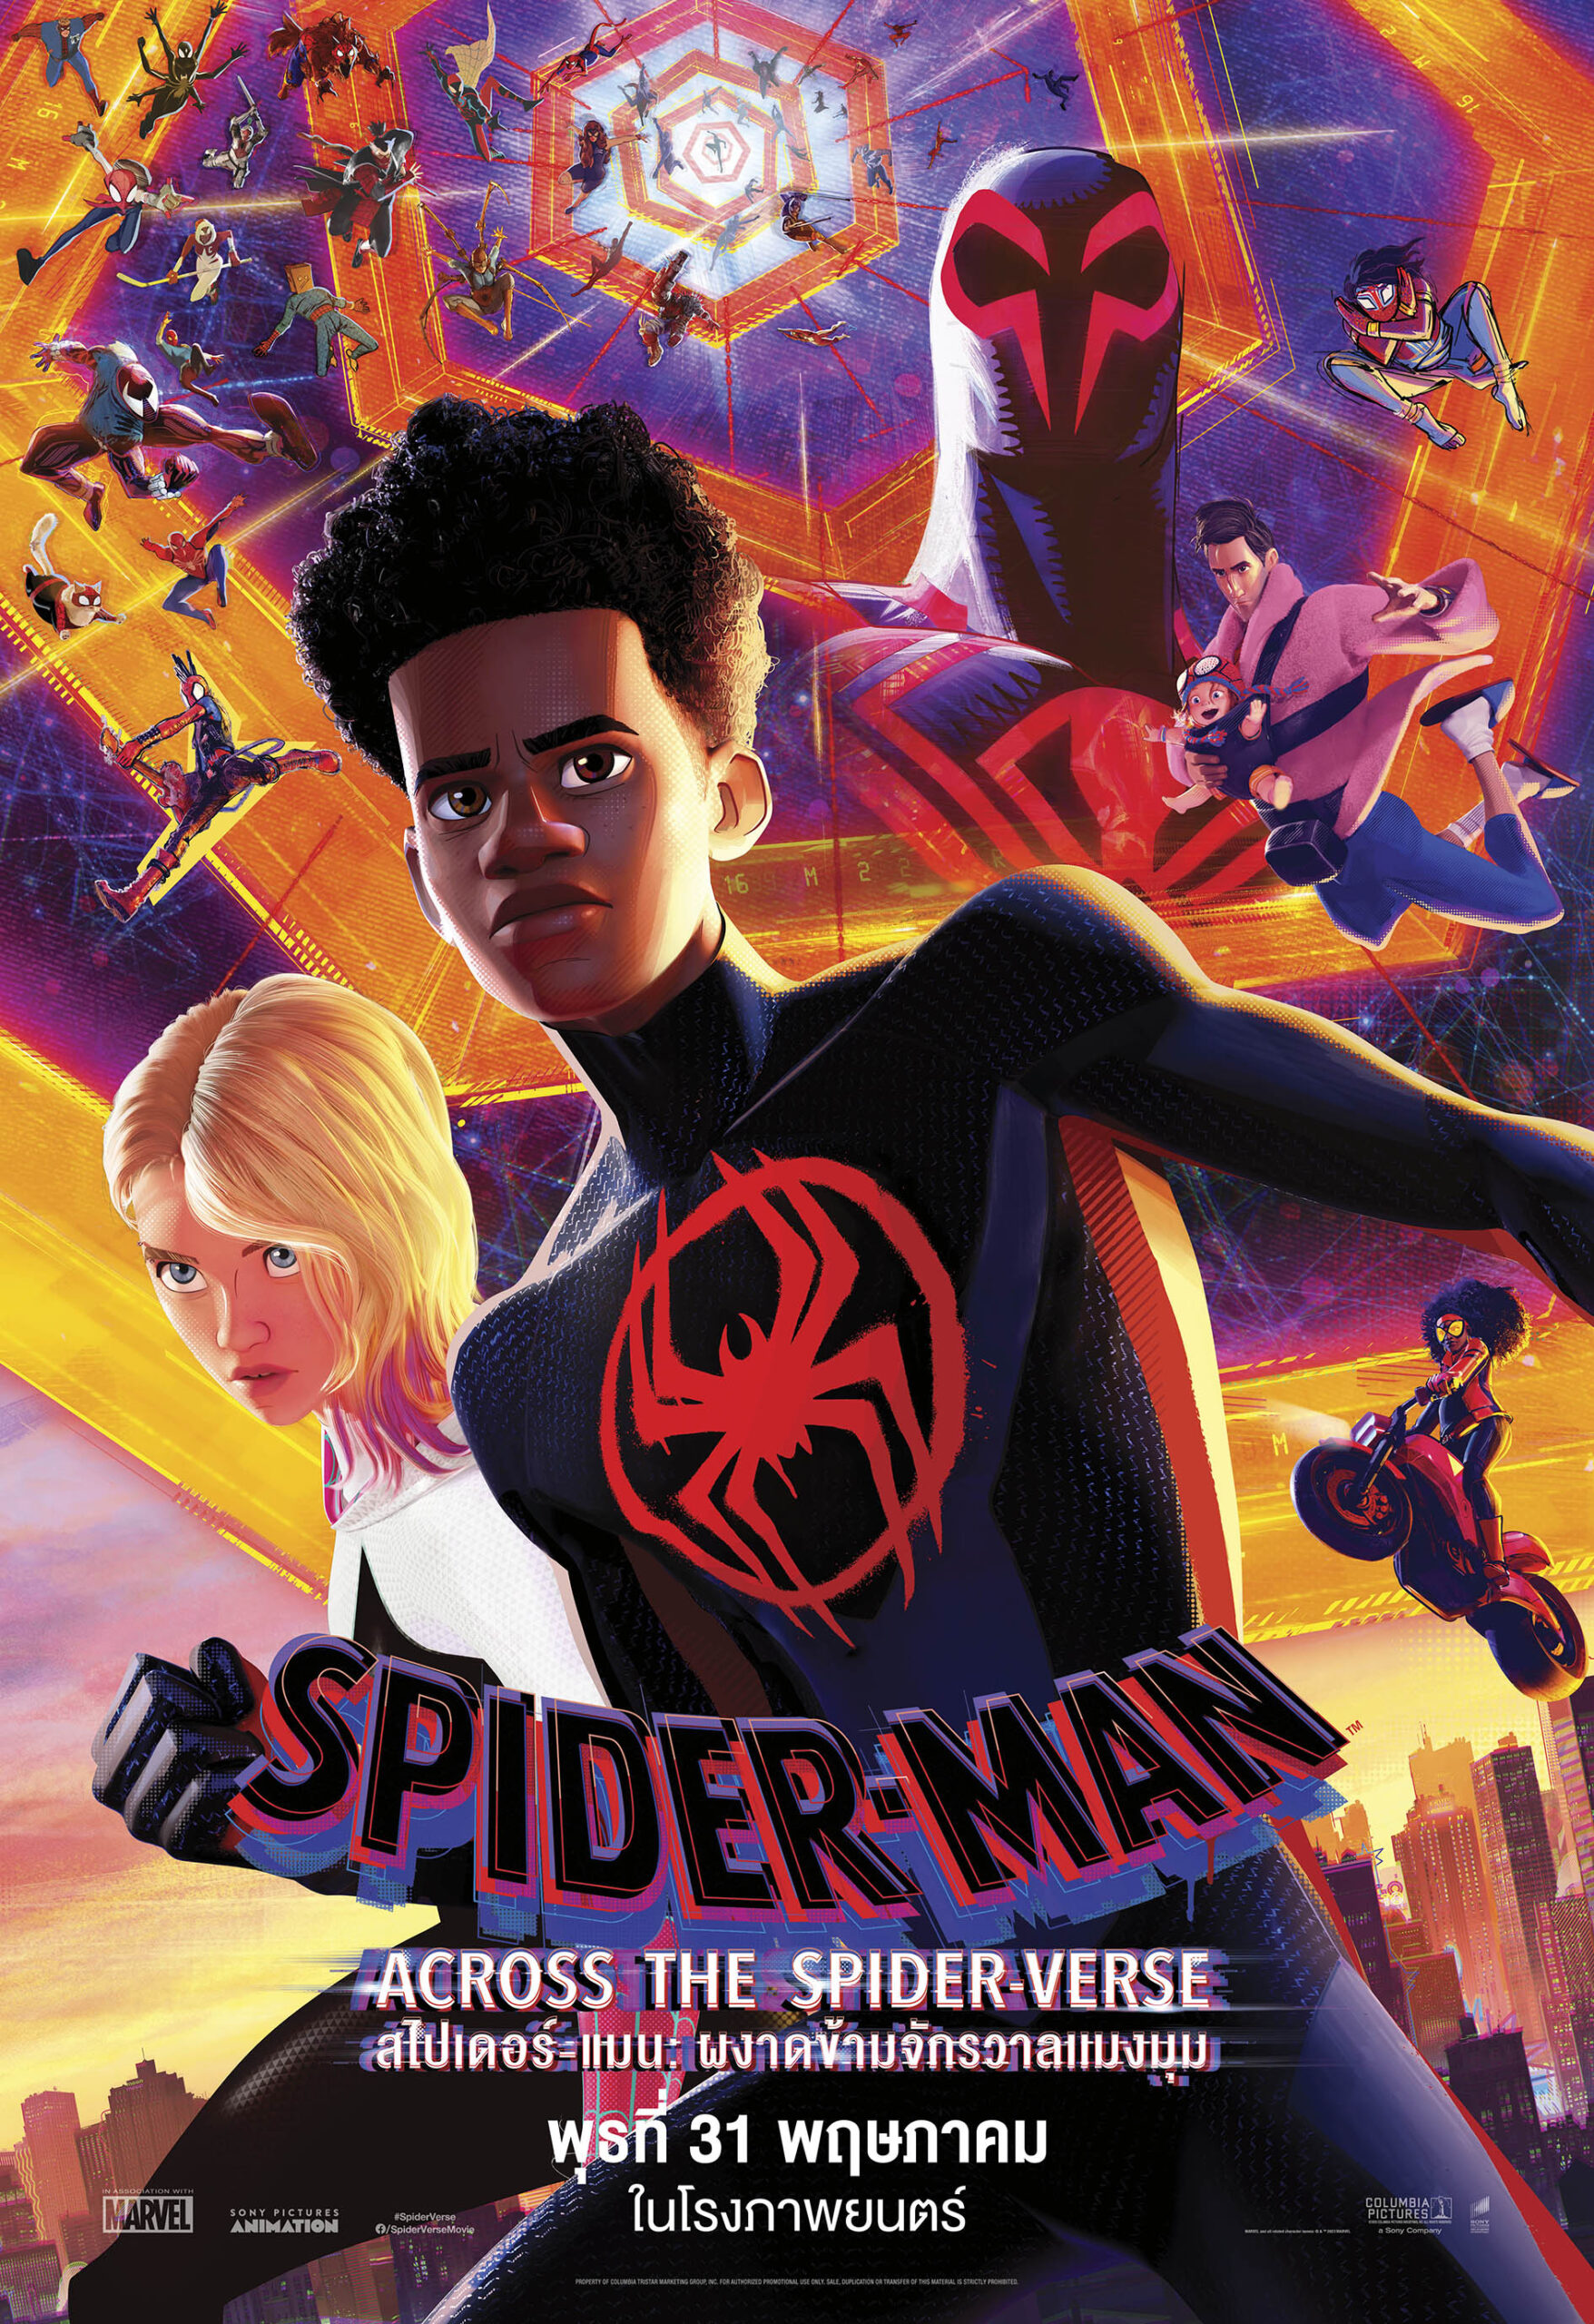 ดูหนังออนไลน์ฟรี Spider Man Across the Spider Verse สไปเดอร์ แมน ผงาดข้ามจักรวาลแมงมุม 2 2023 พากษ์ไทย